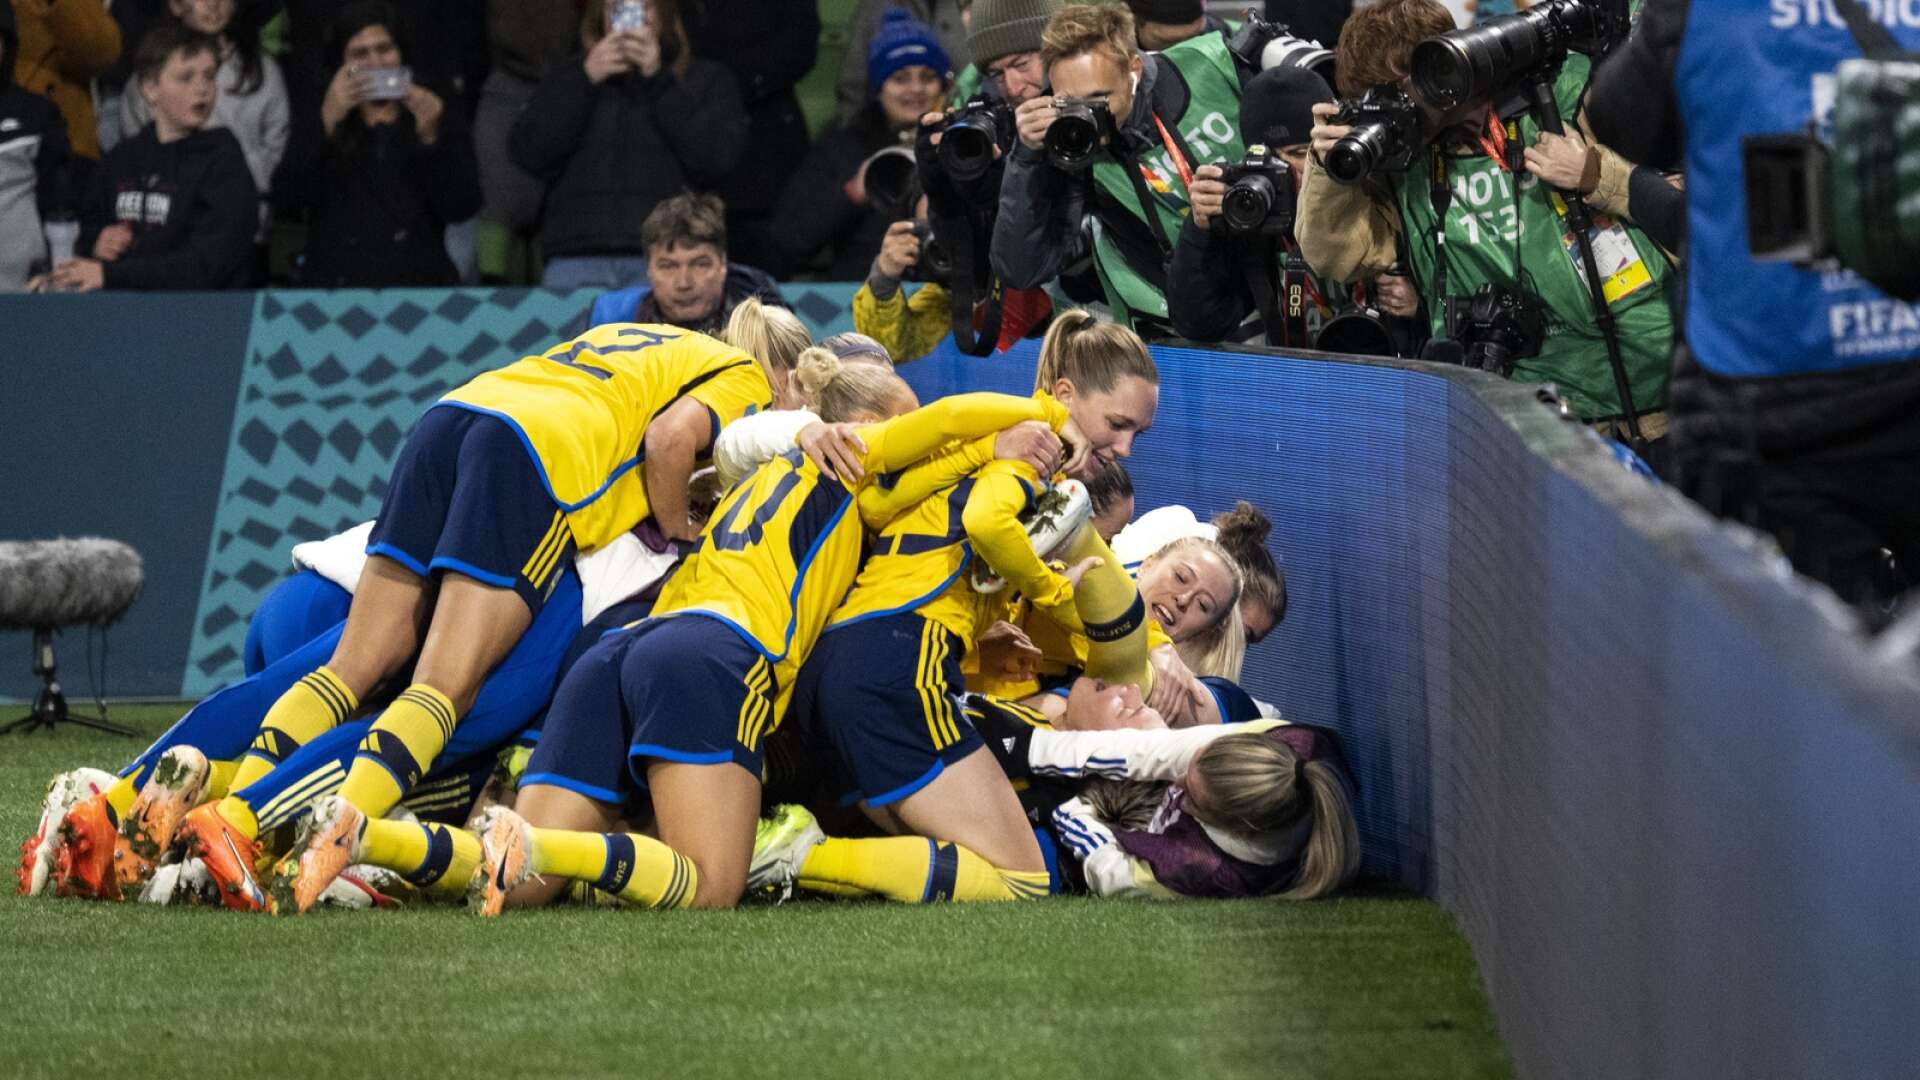 De svenska spelarna jublar efter att ha vunnit den avgörande straffläggningen i söndagens åttondelsfinal mellan Sverige och USA på Melbourne Rectangular Stadium, AAMI Park, under fotbolls-VM i Australien.